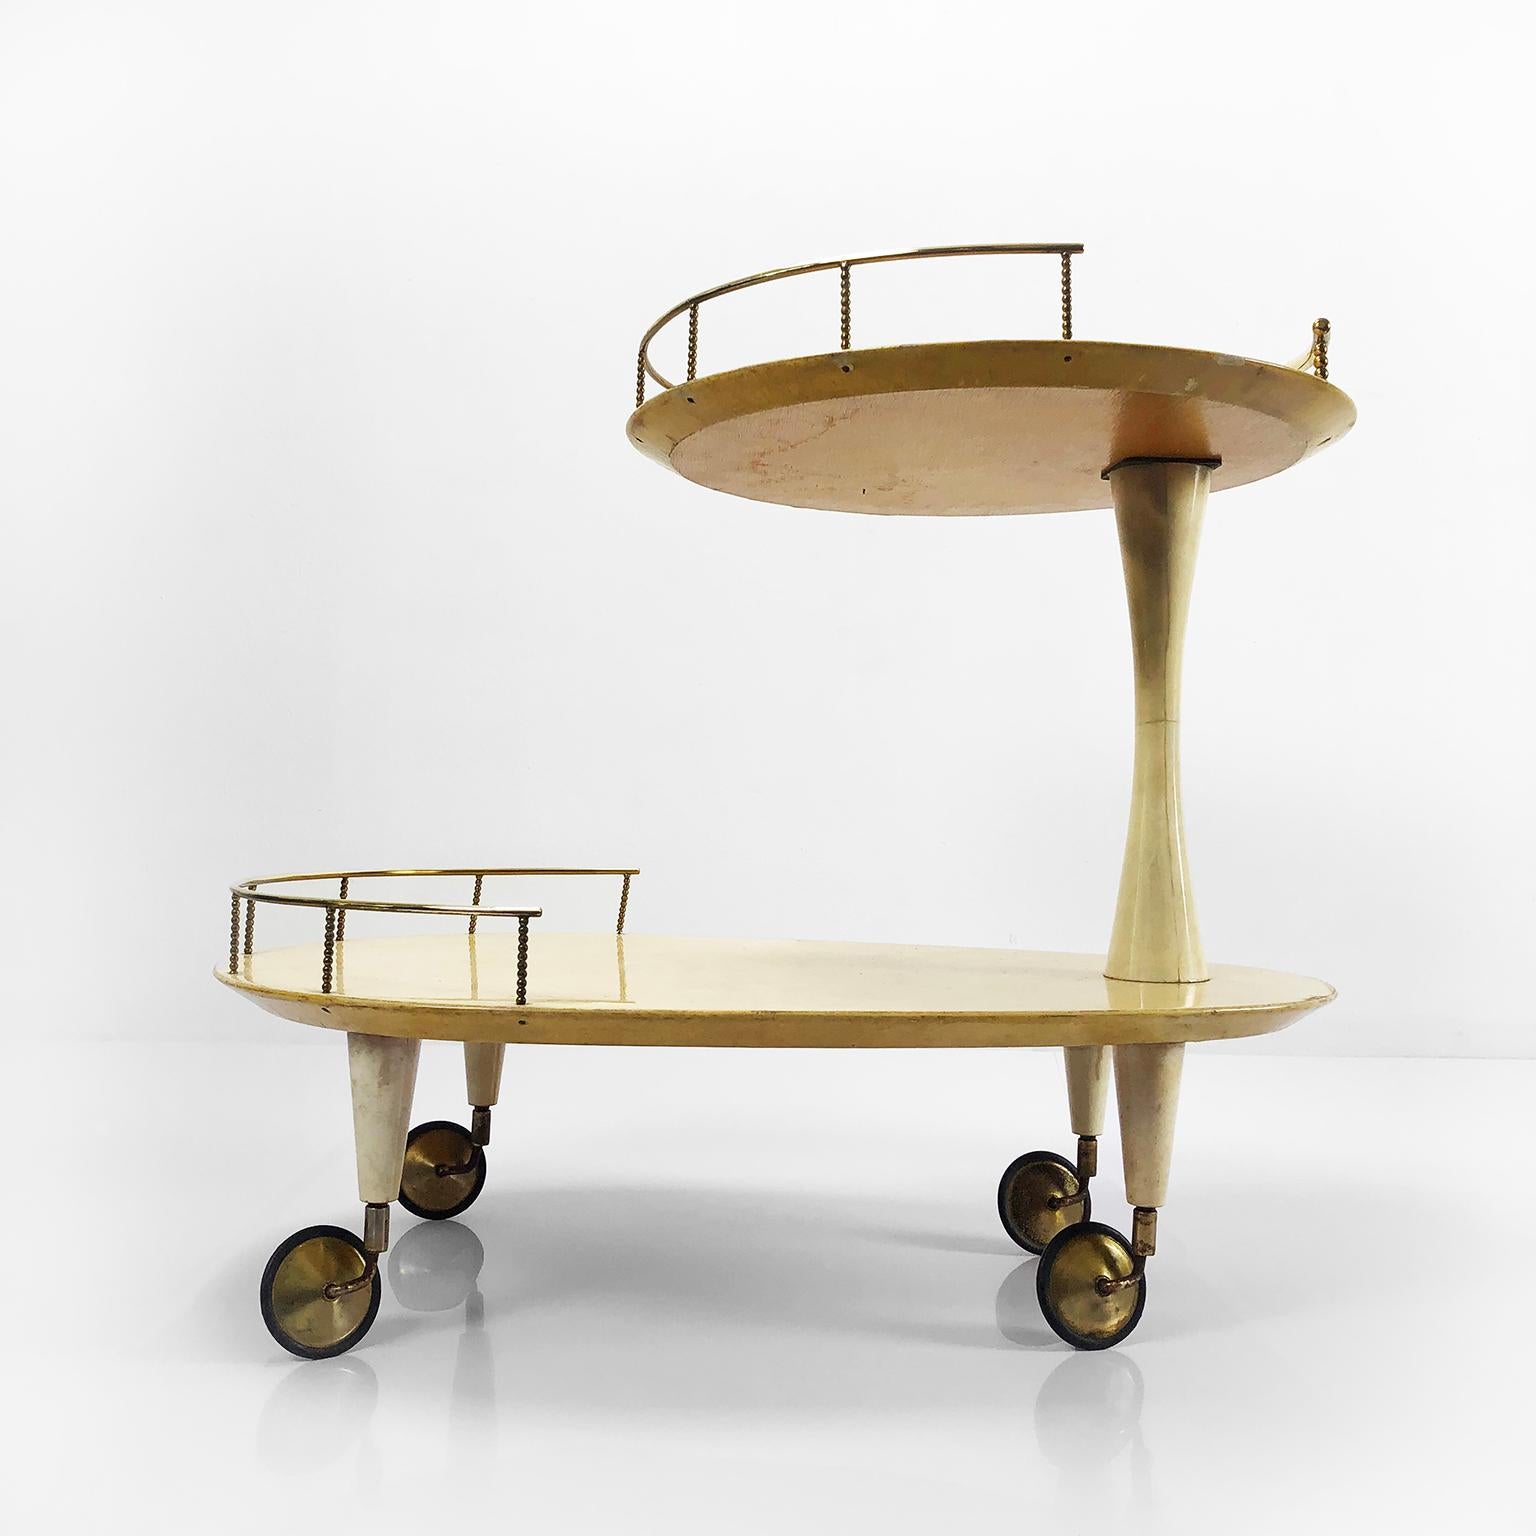 Aldo Tura goatskin bar cart with brass accents, circa 1960s.